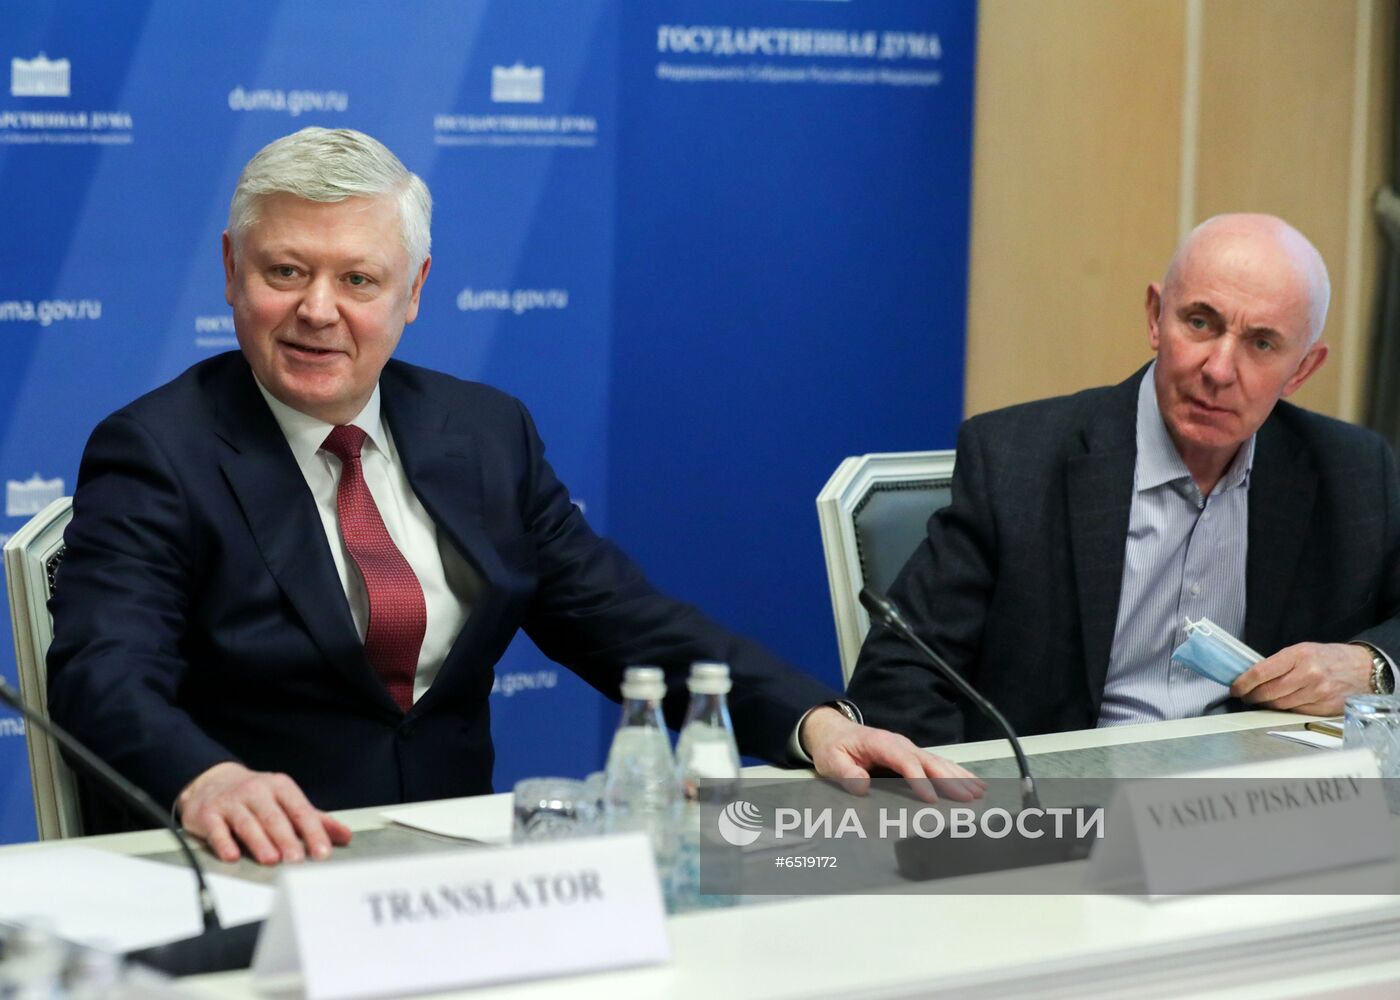 Заседание комиссии Госдумы РФ по расследованию фактов вмешательства иностранных государств во внутренние дела страны